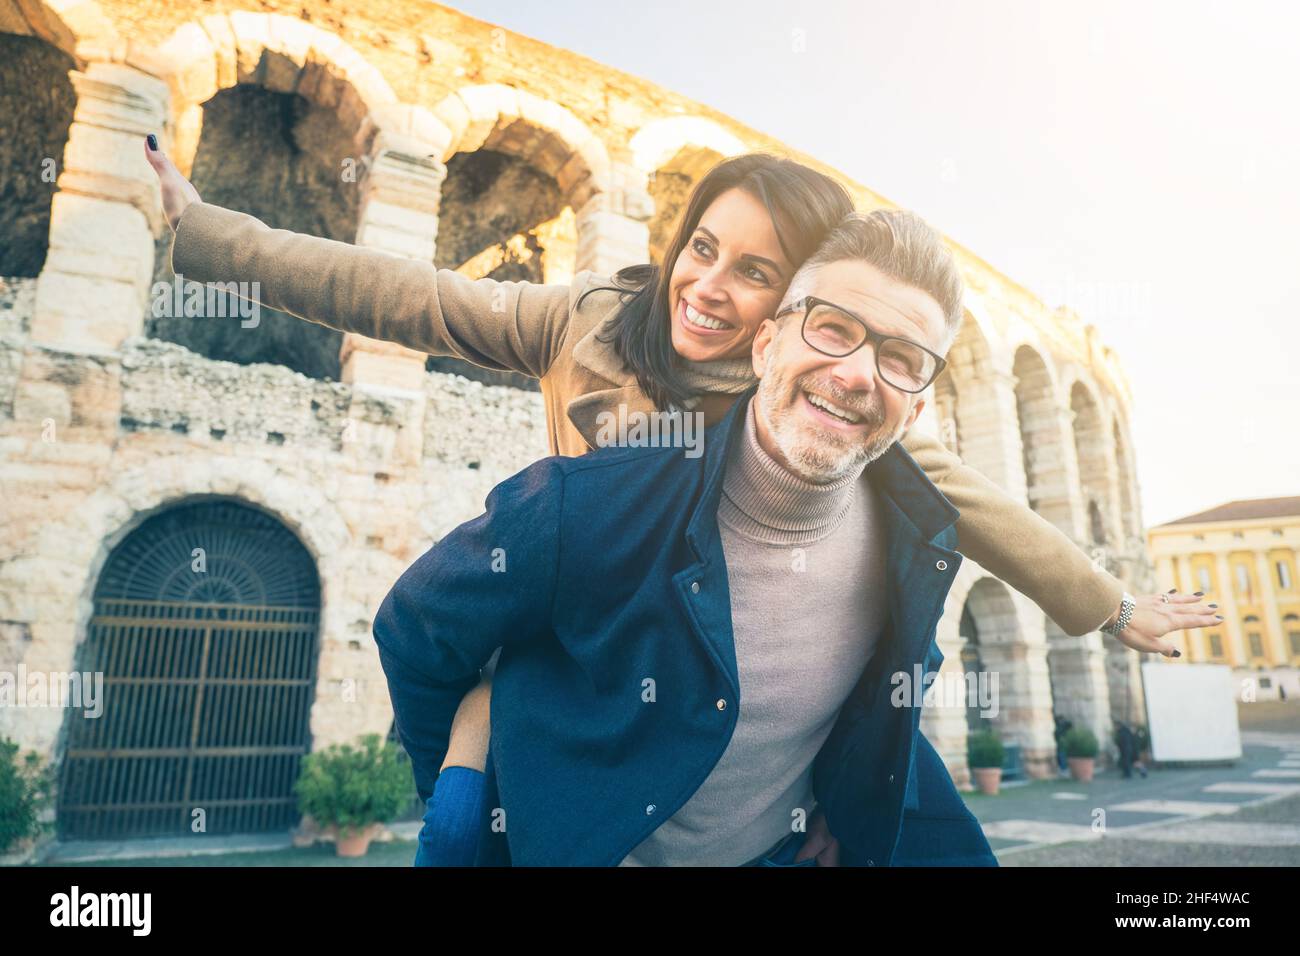 Heureux couple senior dans l'amour s'amuser en face du célèbre monument de l'Italie.Vue en contre-angle d'une femme gaie qui s'étire les bras tout en étant assise Banque D'Images